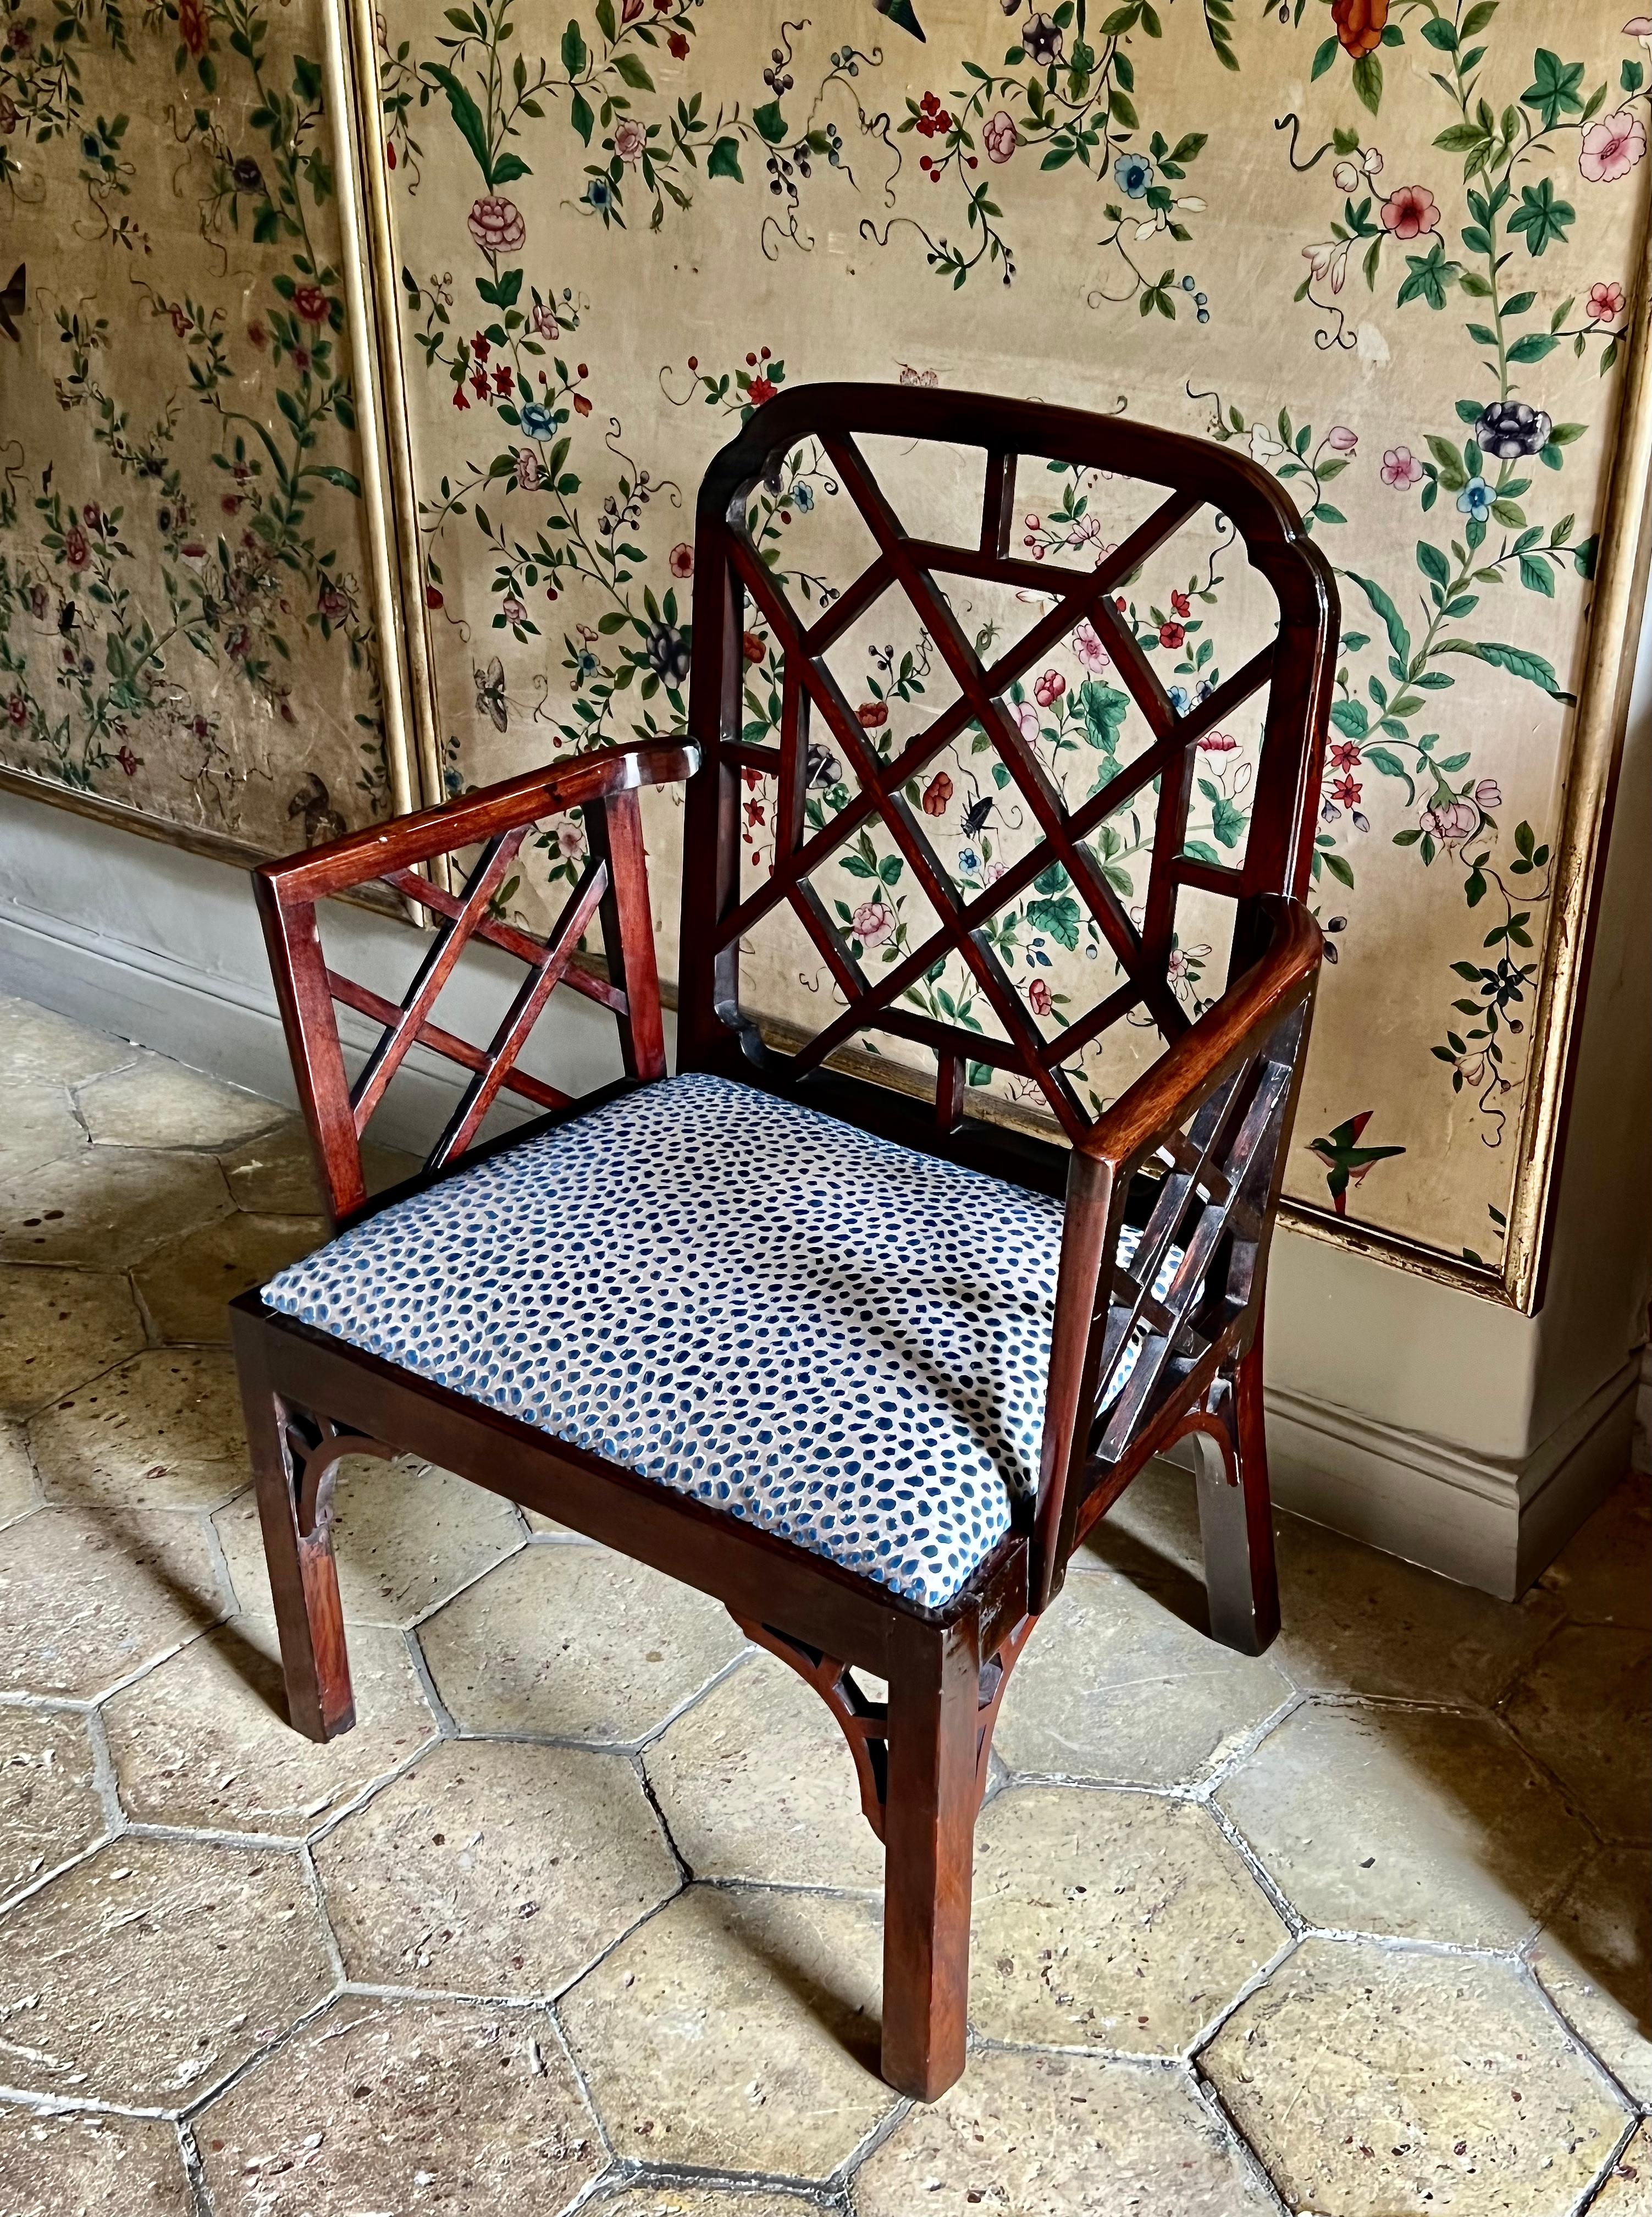 Ein Cockpen-Sessel aus Mahagoni aus dem 18. Jahrhundert. Zeitalter Georgs III., ca. 1762.

Dieser seltene und raffinierte antike Cockpen-Sessel hat sein durchbrochenes Chinoiserie-Rahmenwerk und seine Winkelkonsolen behalten.

Einige kleinere